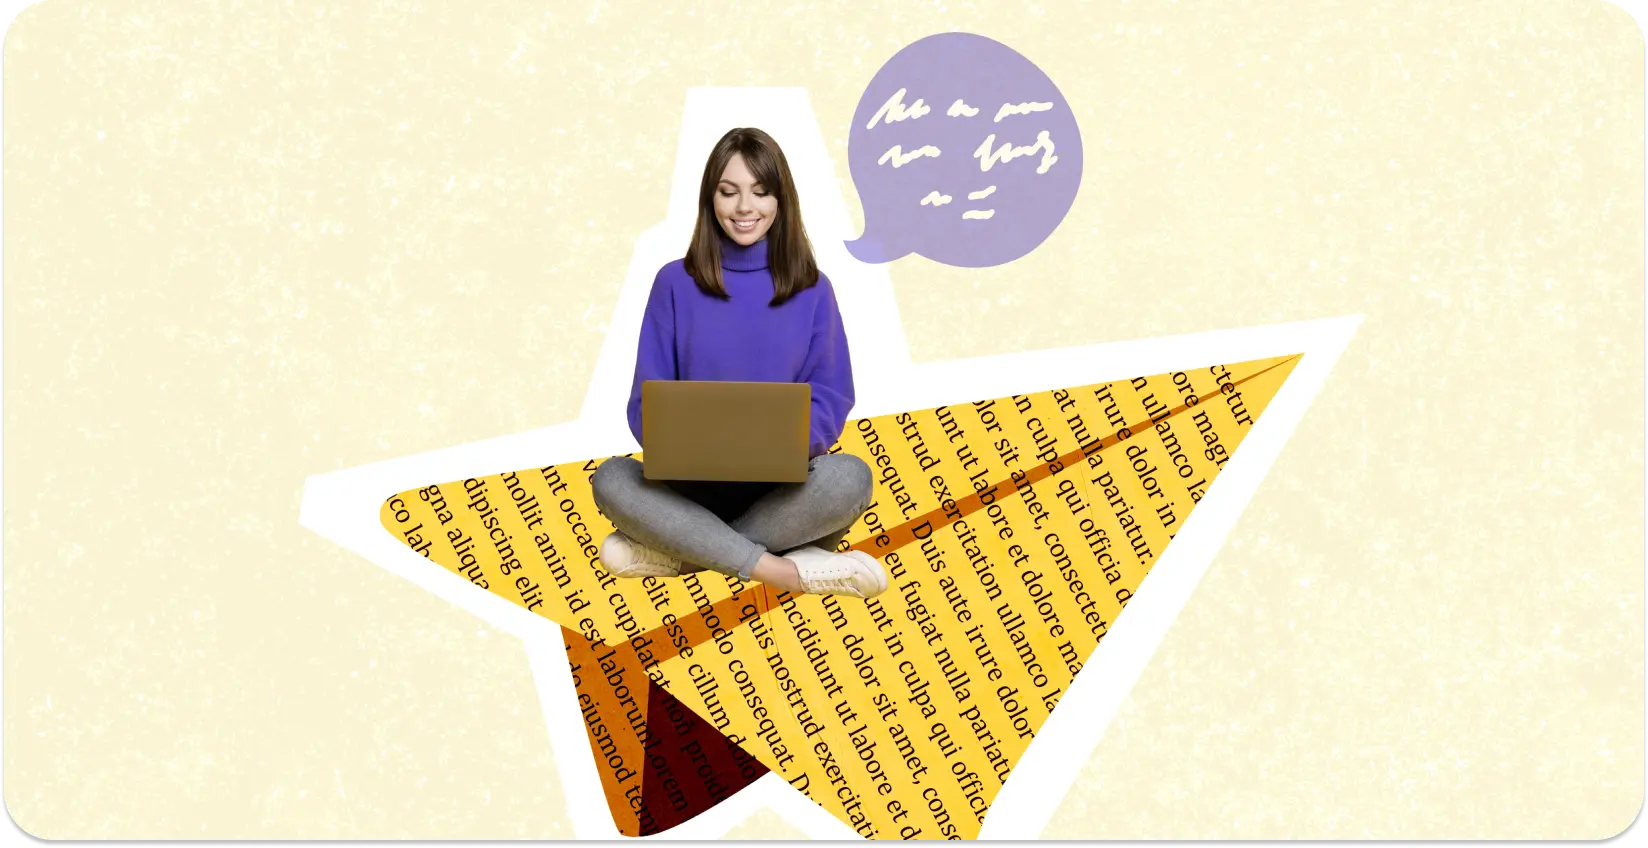 Uno scrittore siede su un collage a forma di stella di pagine piene di testo con un laptop.